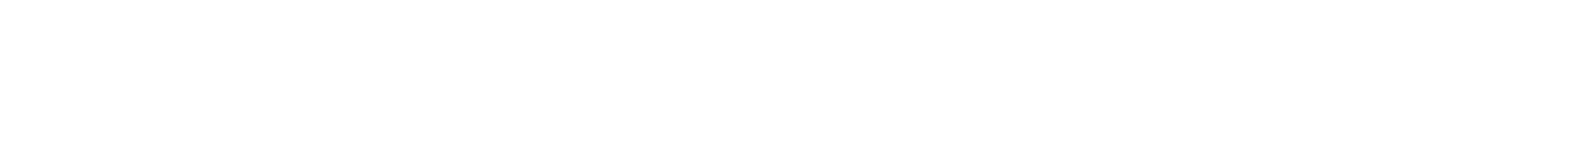 Lanvin Group logo large for dark backgrounds (transparent PNG)